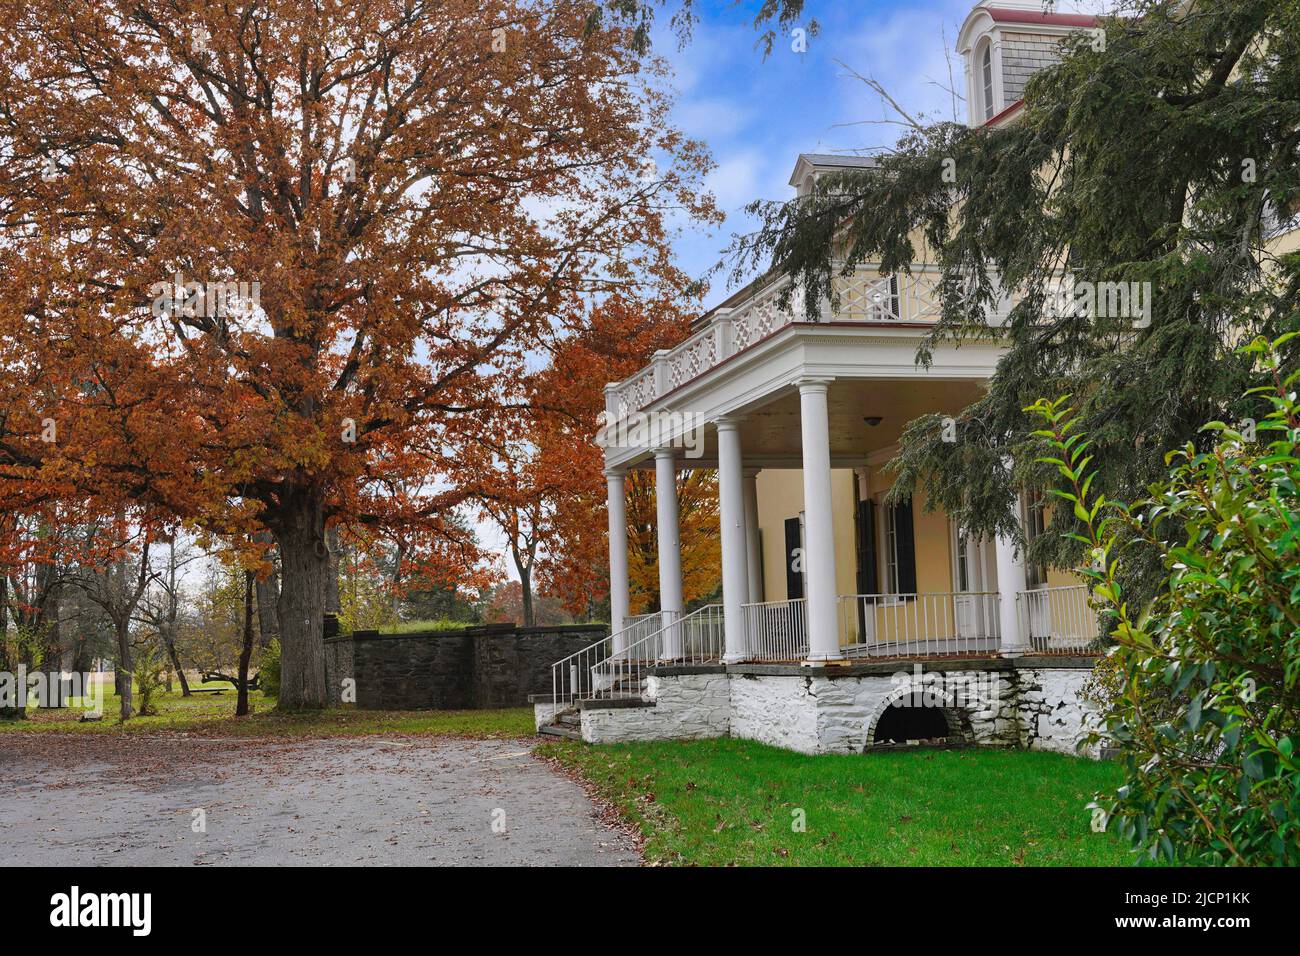 Franklin D. Roosevelt Home, porche avant de la vieille maison, avec chêne dans les couleurs d'automne Banque D'Images